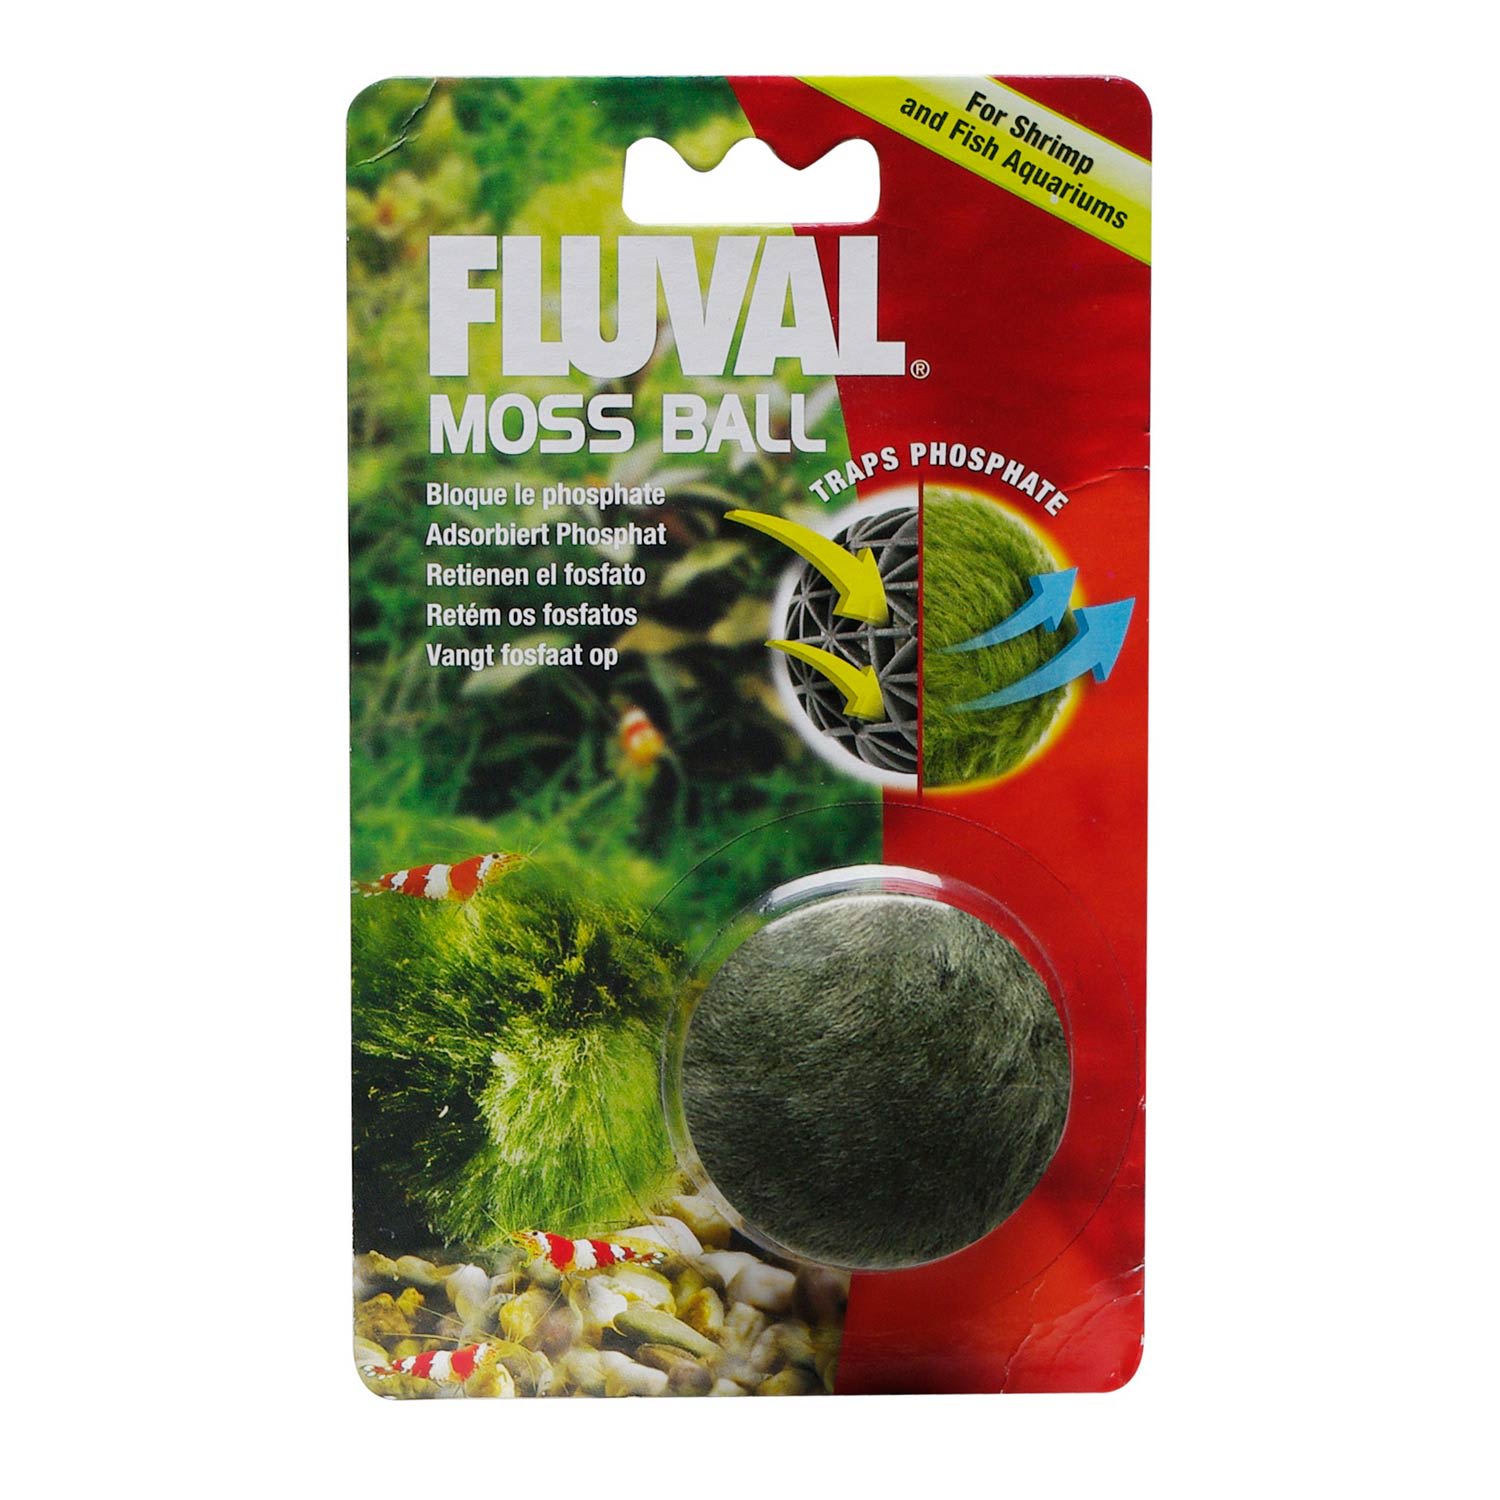 Fluval Moss Ball Ornament